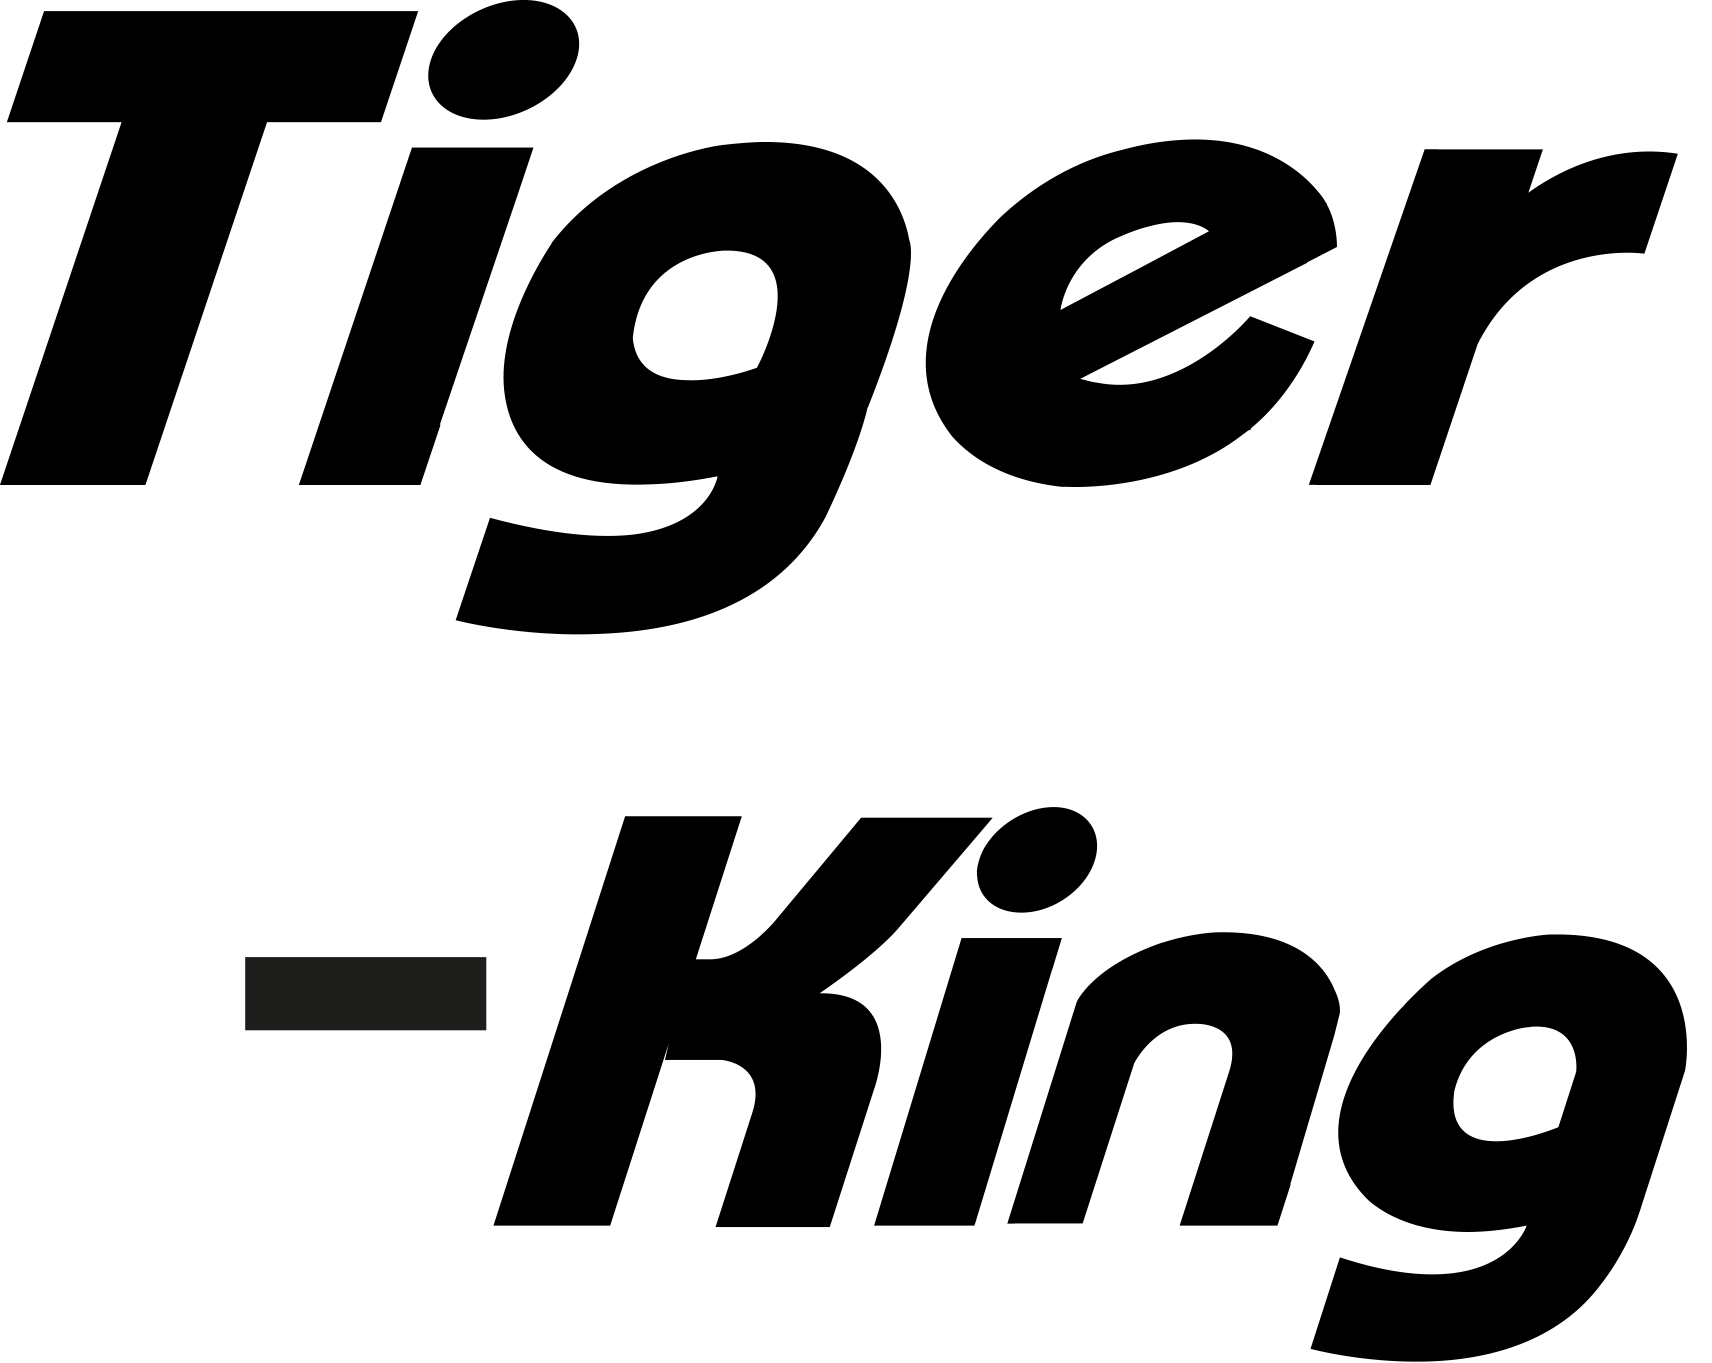 Tiger-King - dieselvärmare och värmekanoner